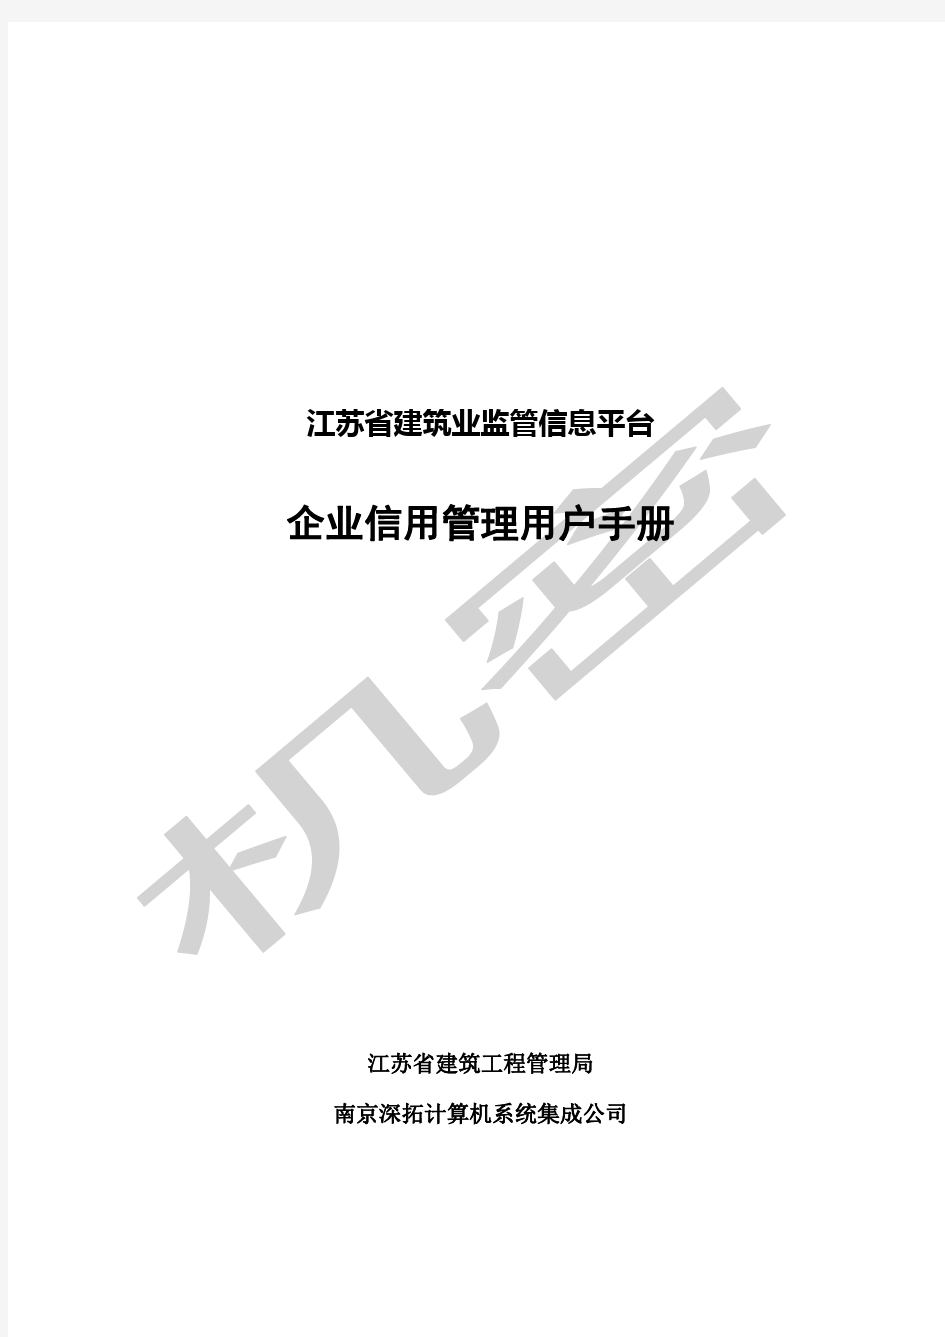 江苏省建筑业监管信息平台使用手册